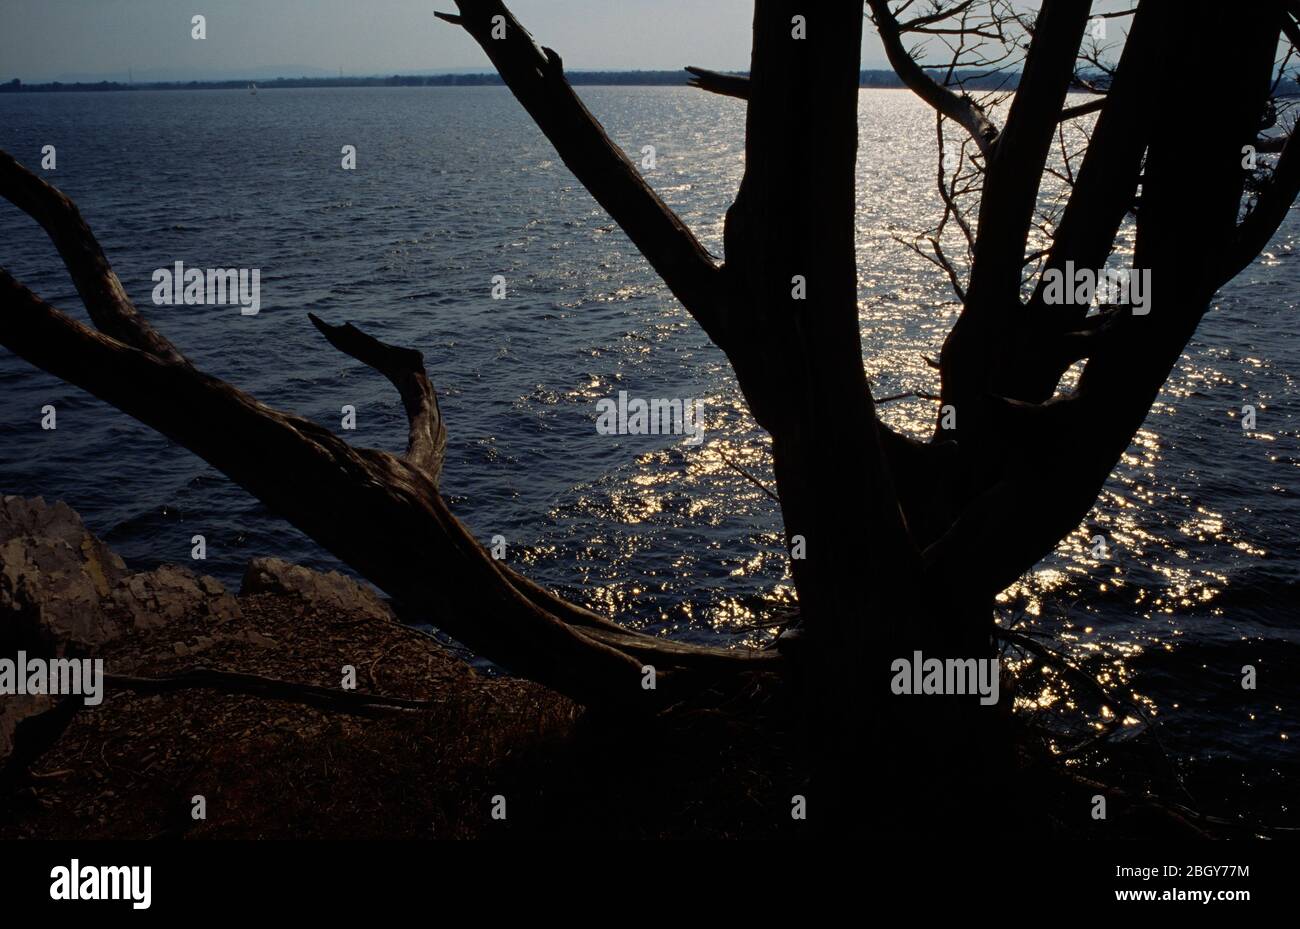 Silhouette de pin et lac Champlain, parc national point au Roche, New York Banque D'Images